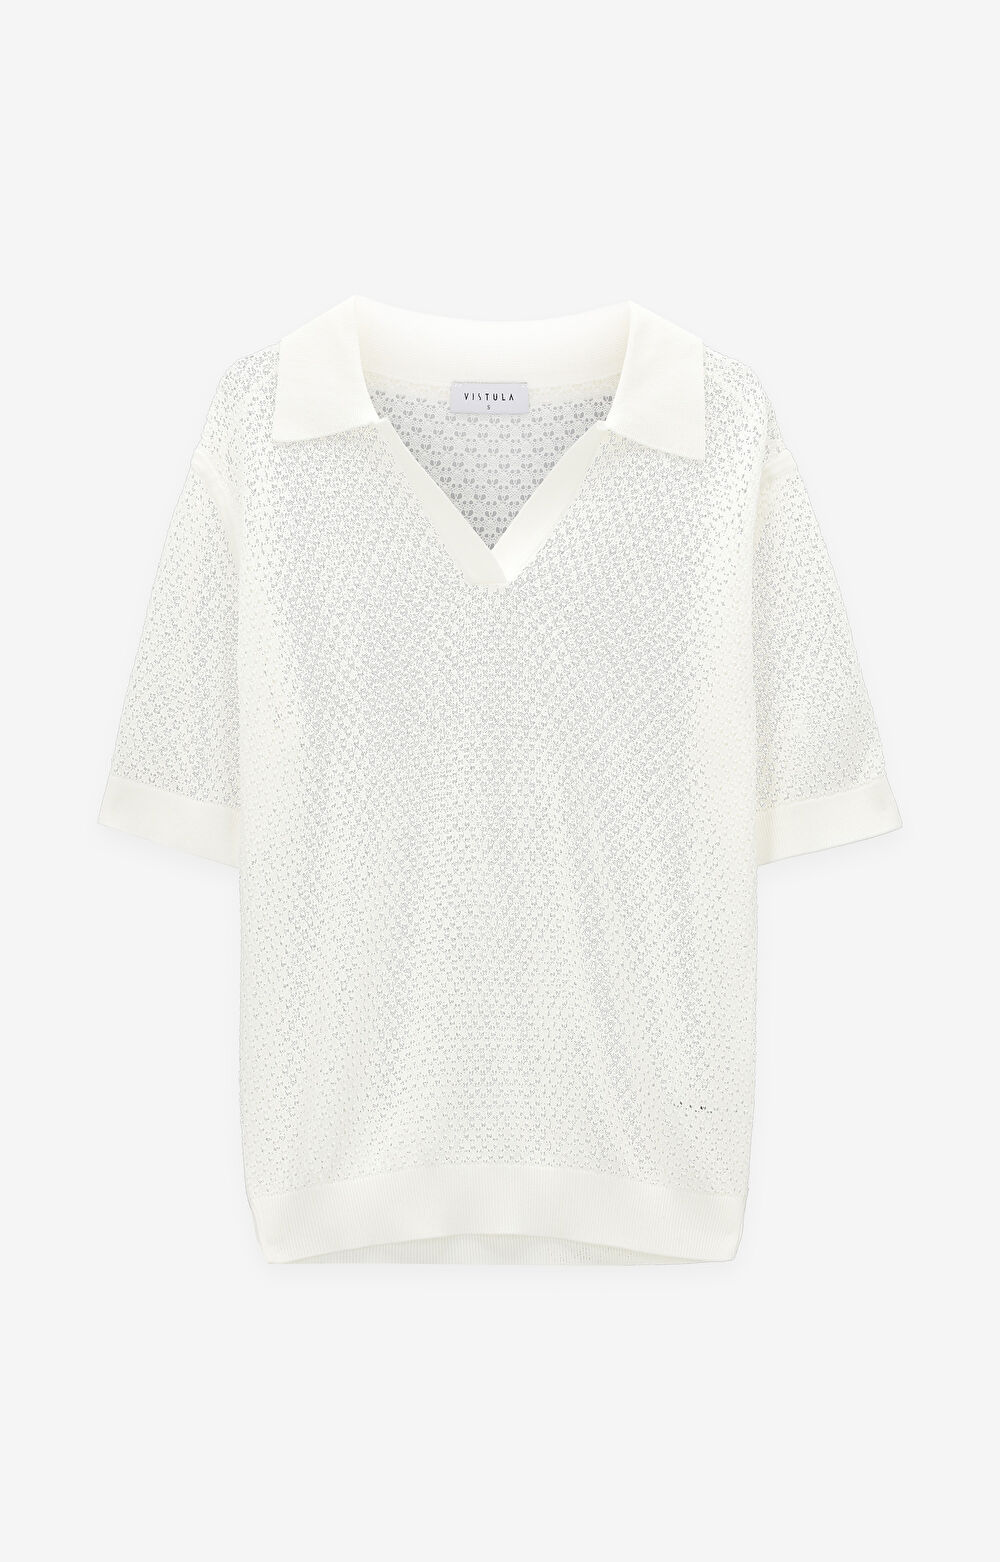 Ażurowy t-shirt swetrowy z jedwabiem